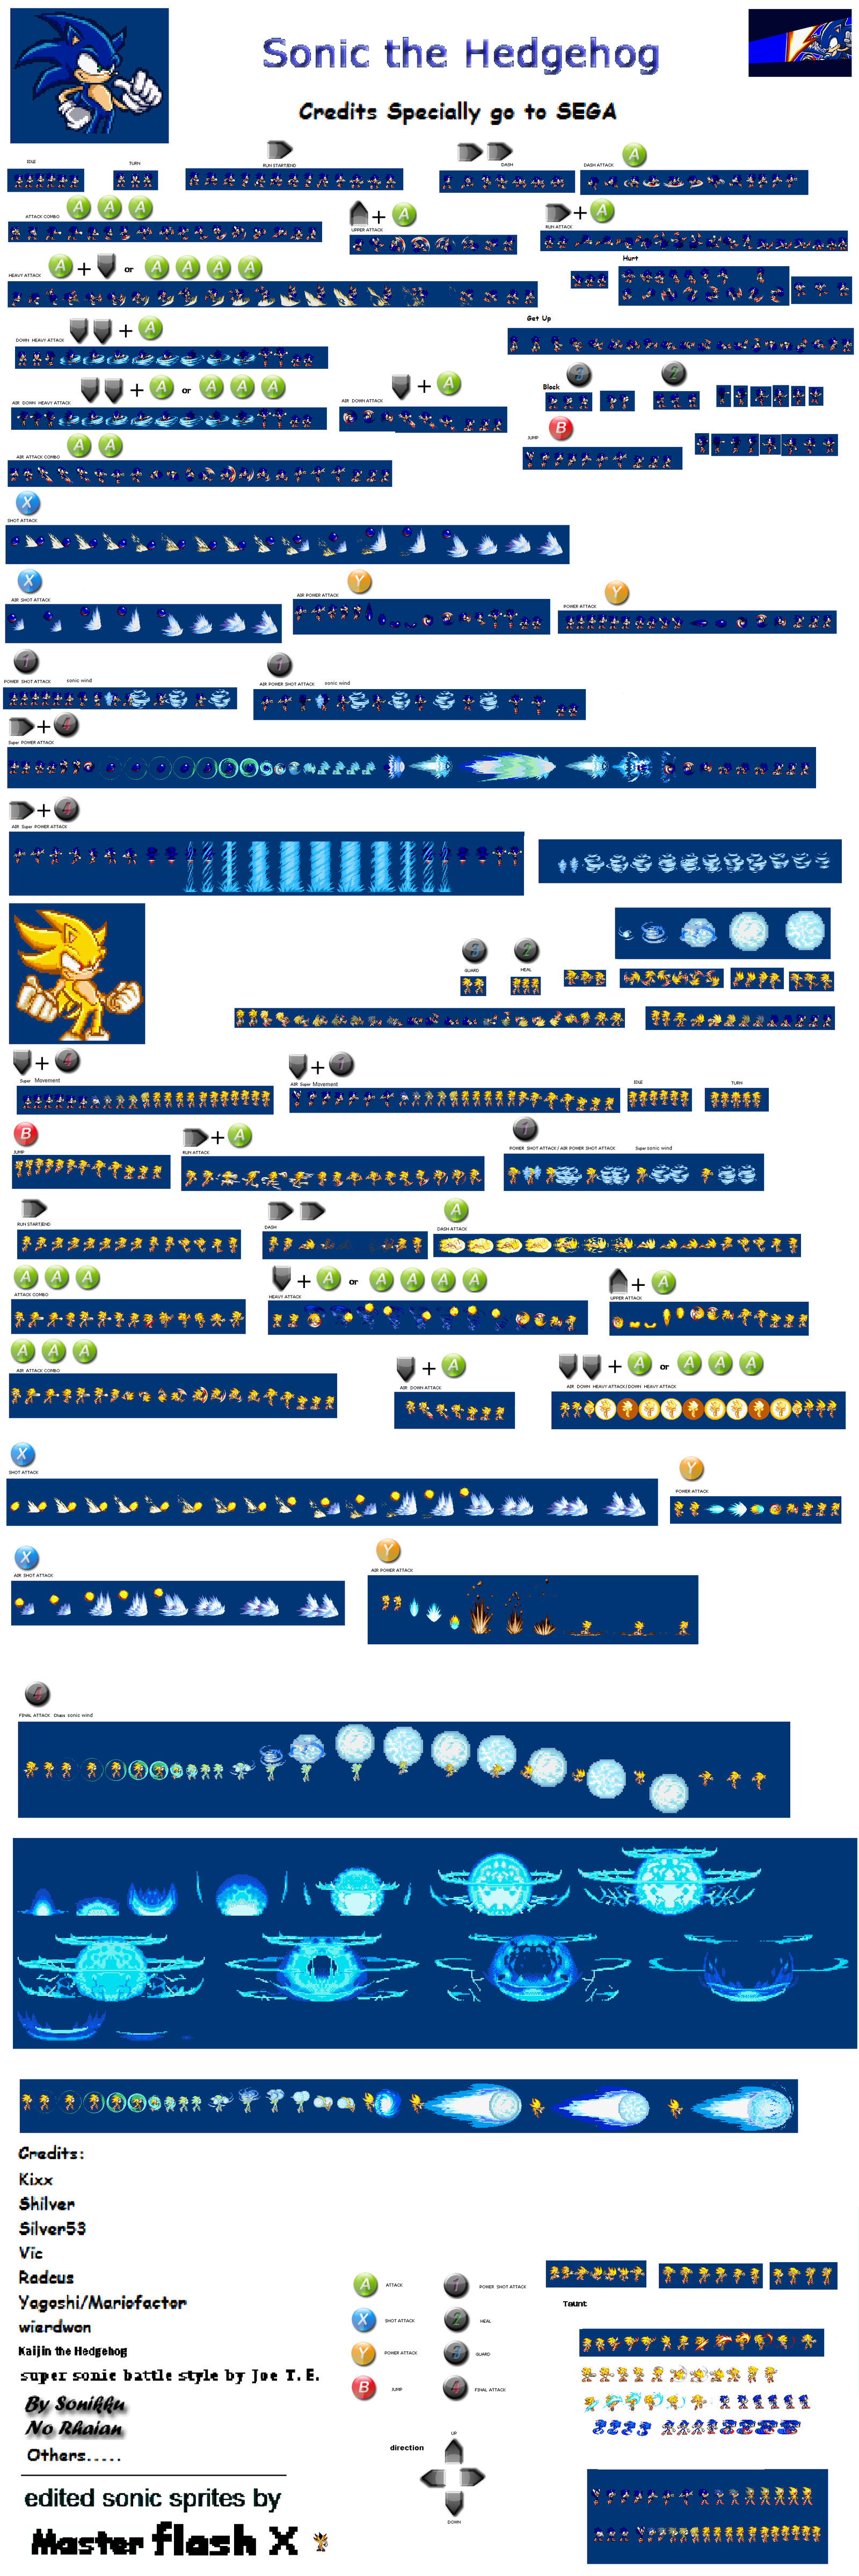 Sonic Legendary Battle